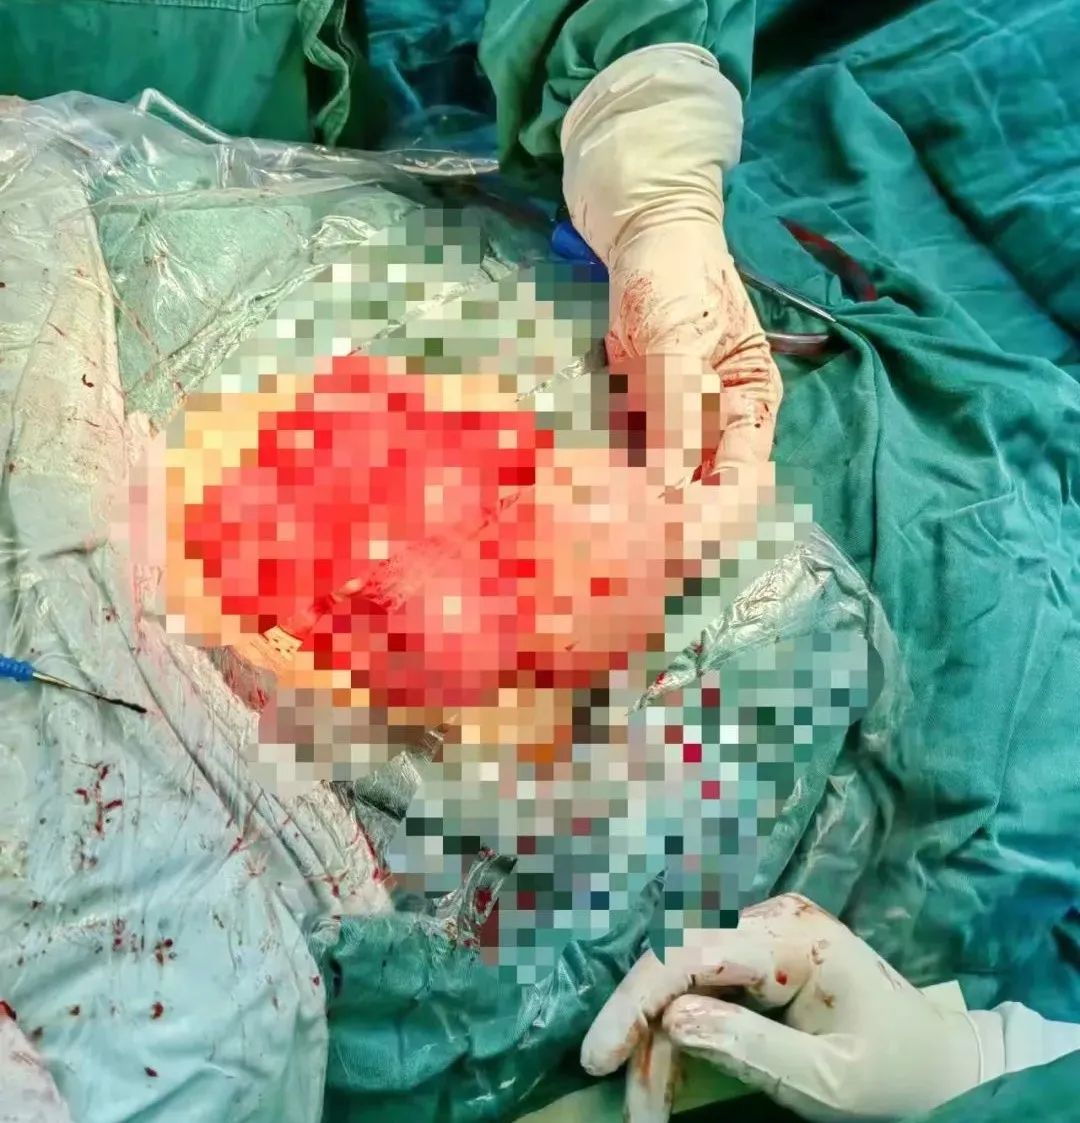 常德市第四人民医院成功完成一例多发复杂子宫肌瘤剥除术